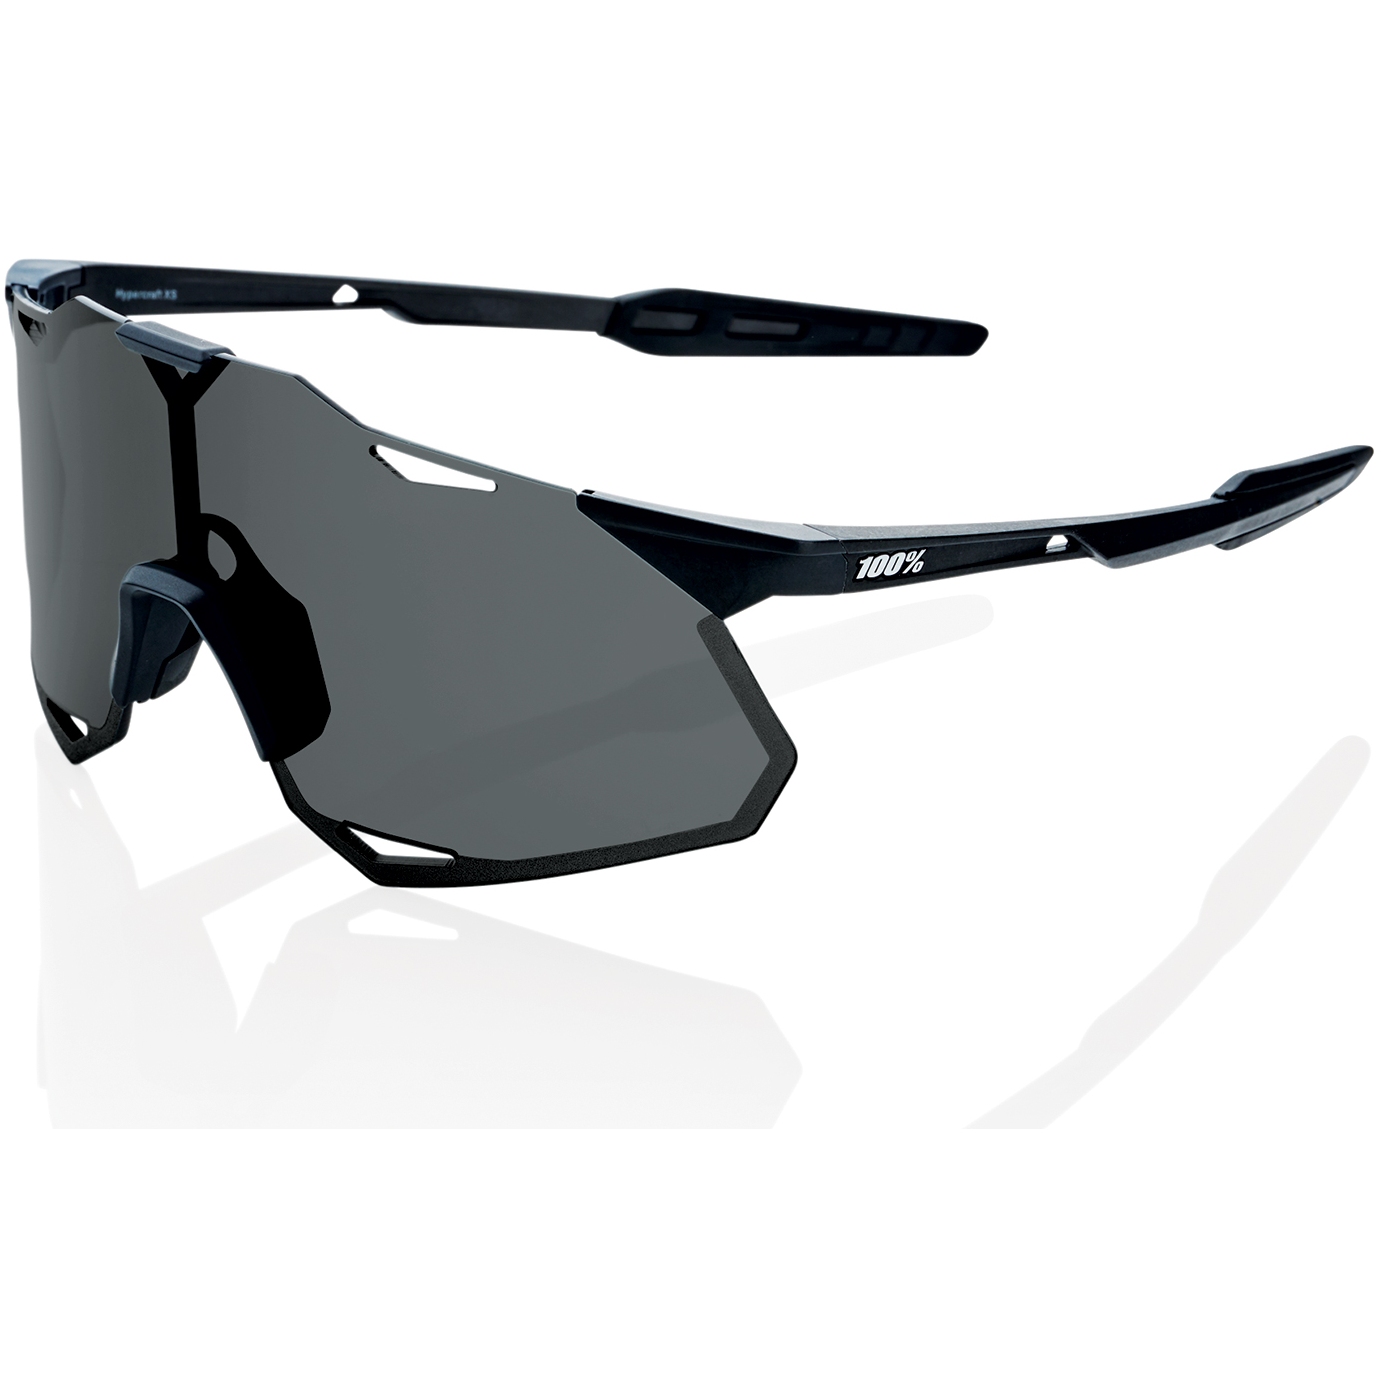 Productfoto van 100% Hypercraft XS Glasses - Smoke Lens - Matte Black / + Clear